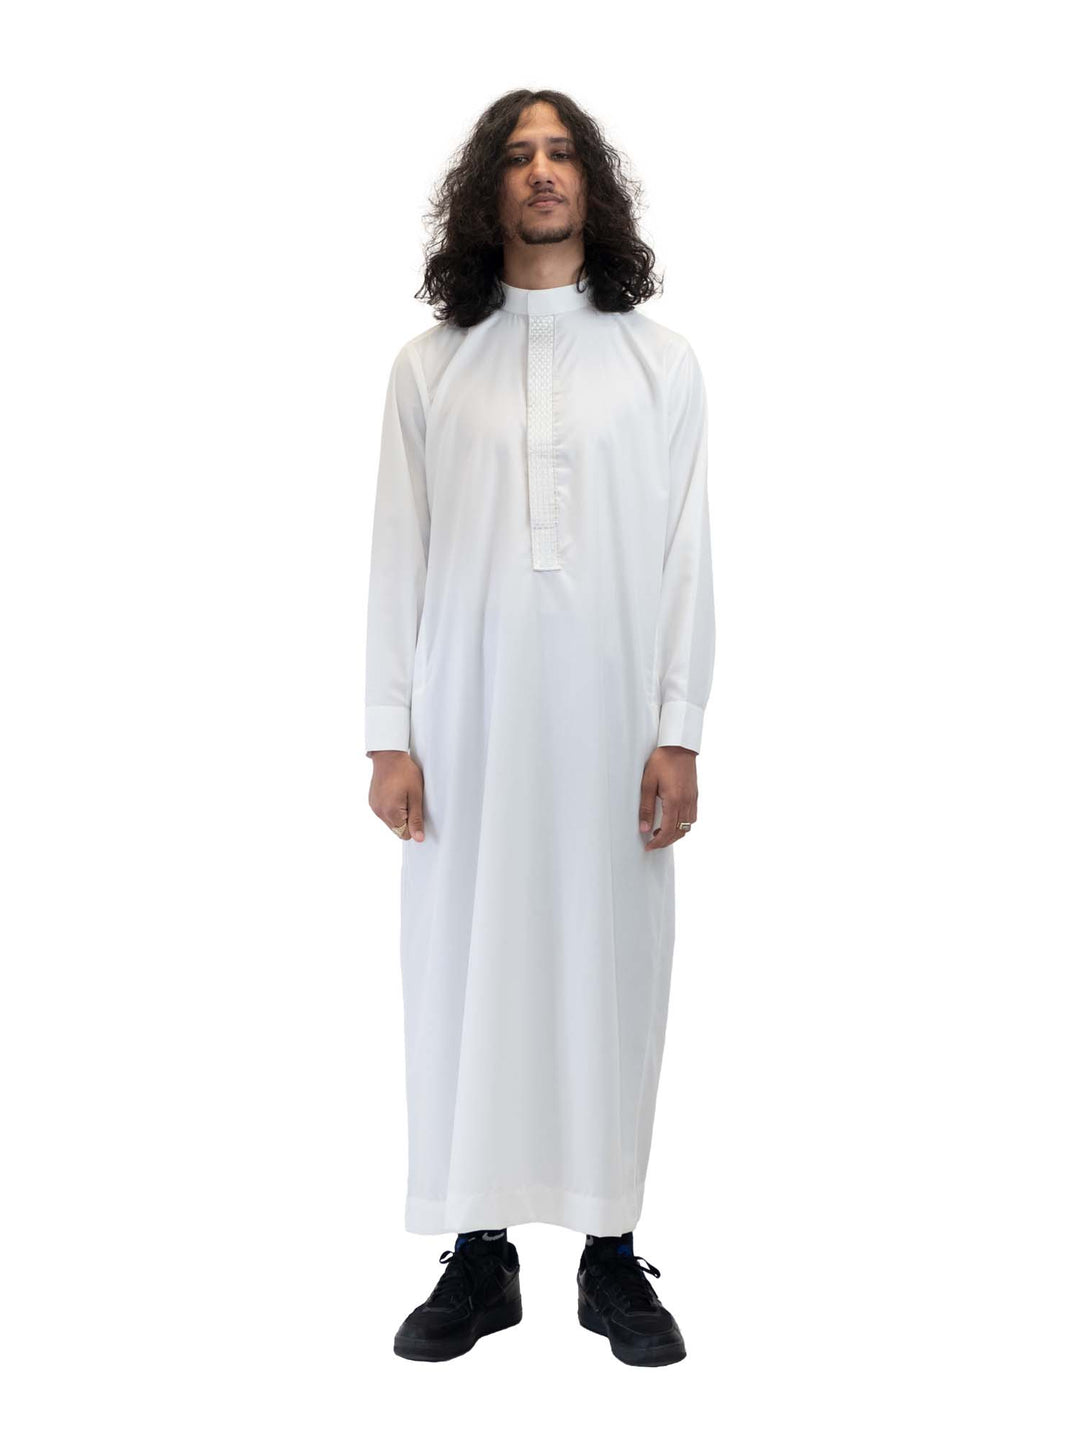 ثوب رجالي انطباعات إسلامية - فتحة كوفي مع أزرار أكمام